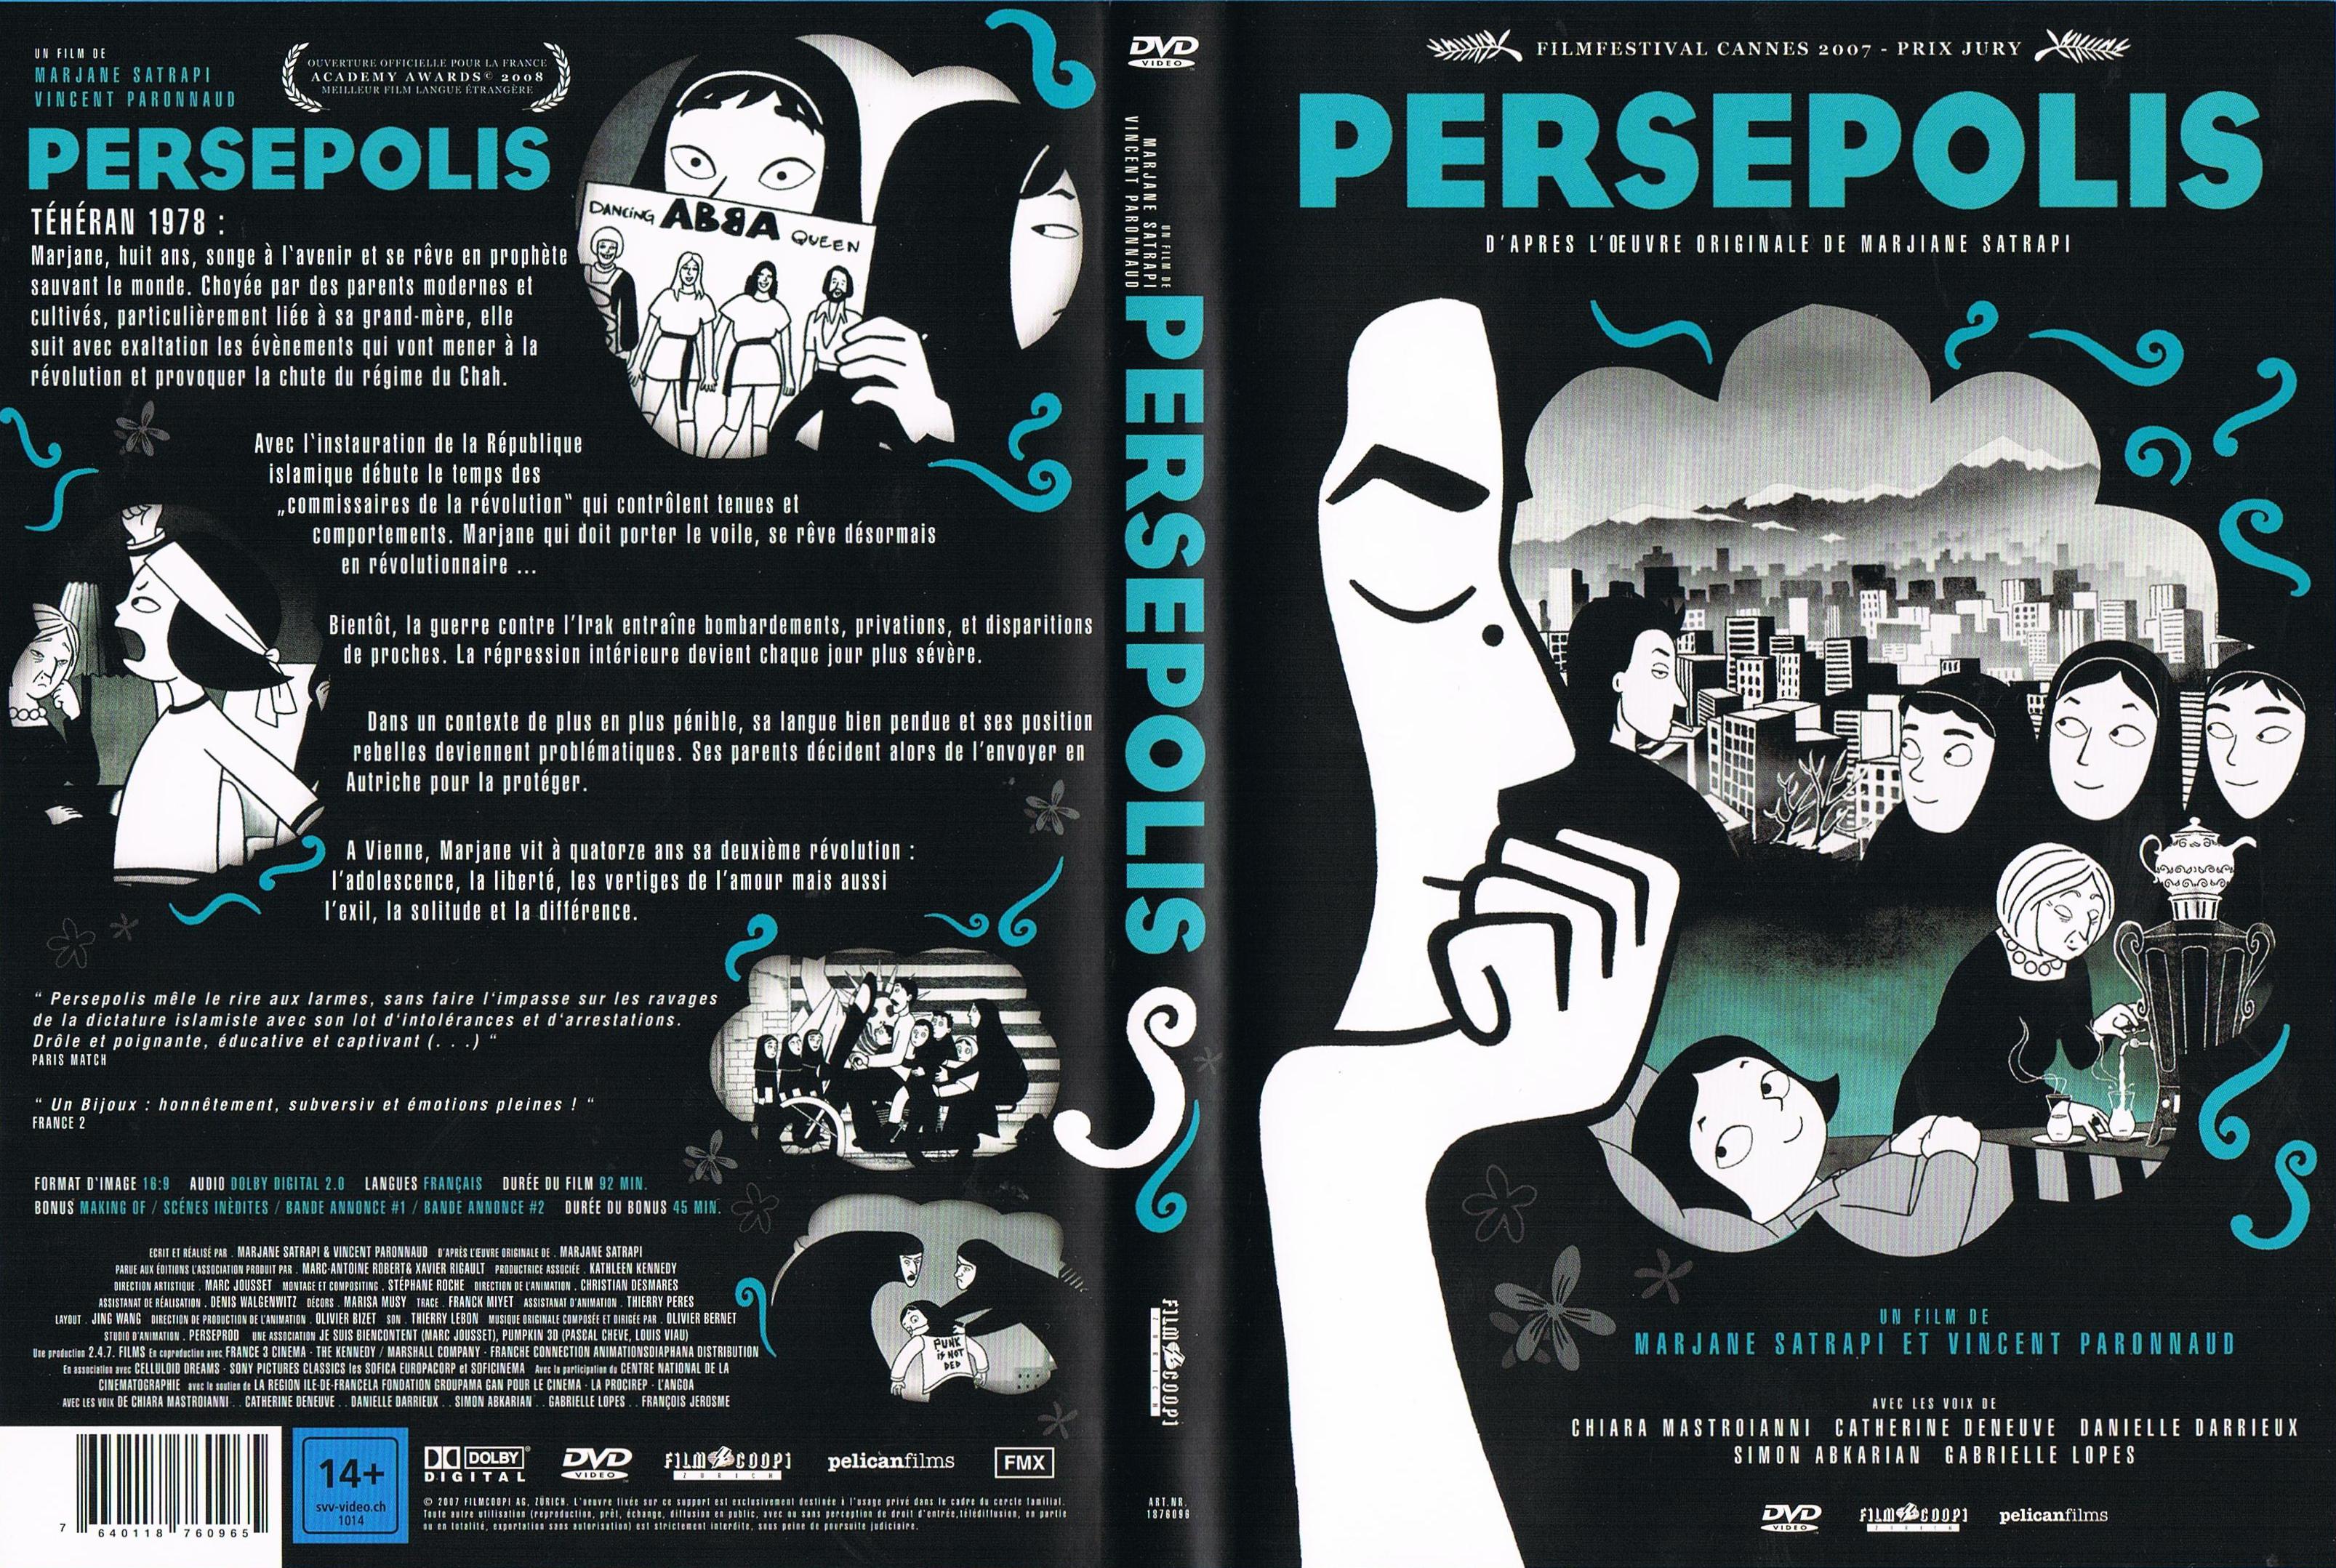 Jaquette DVD Persepolis v2